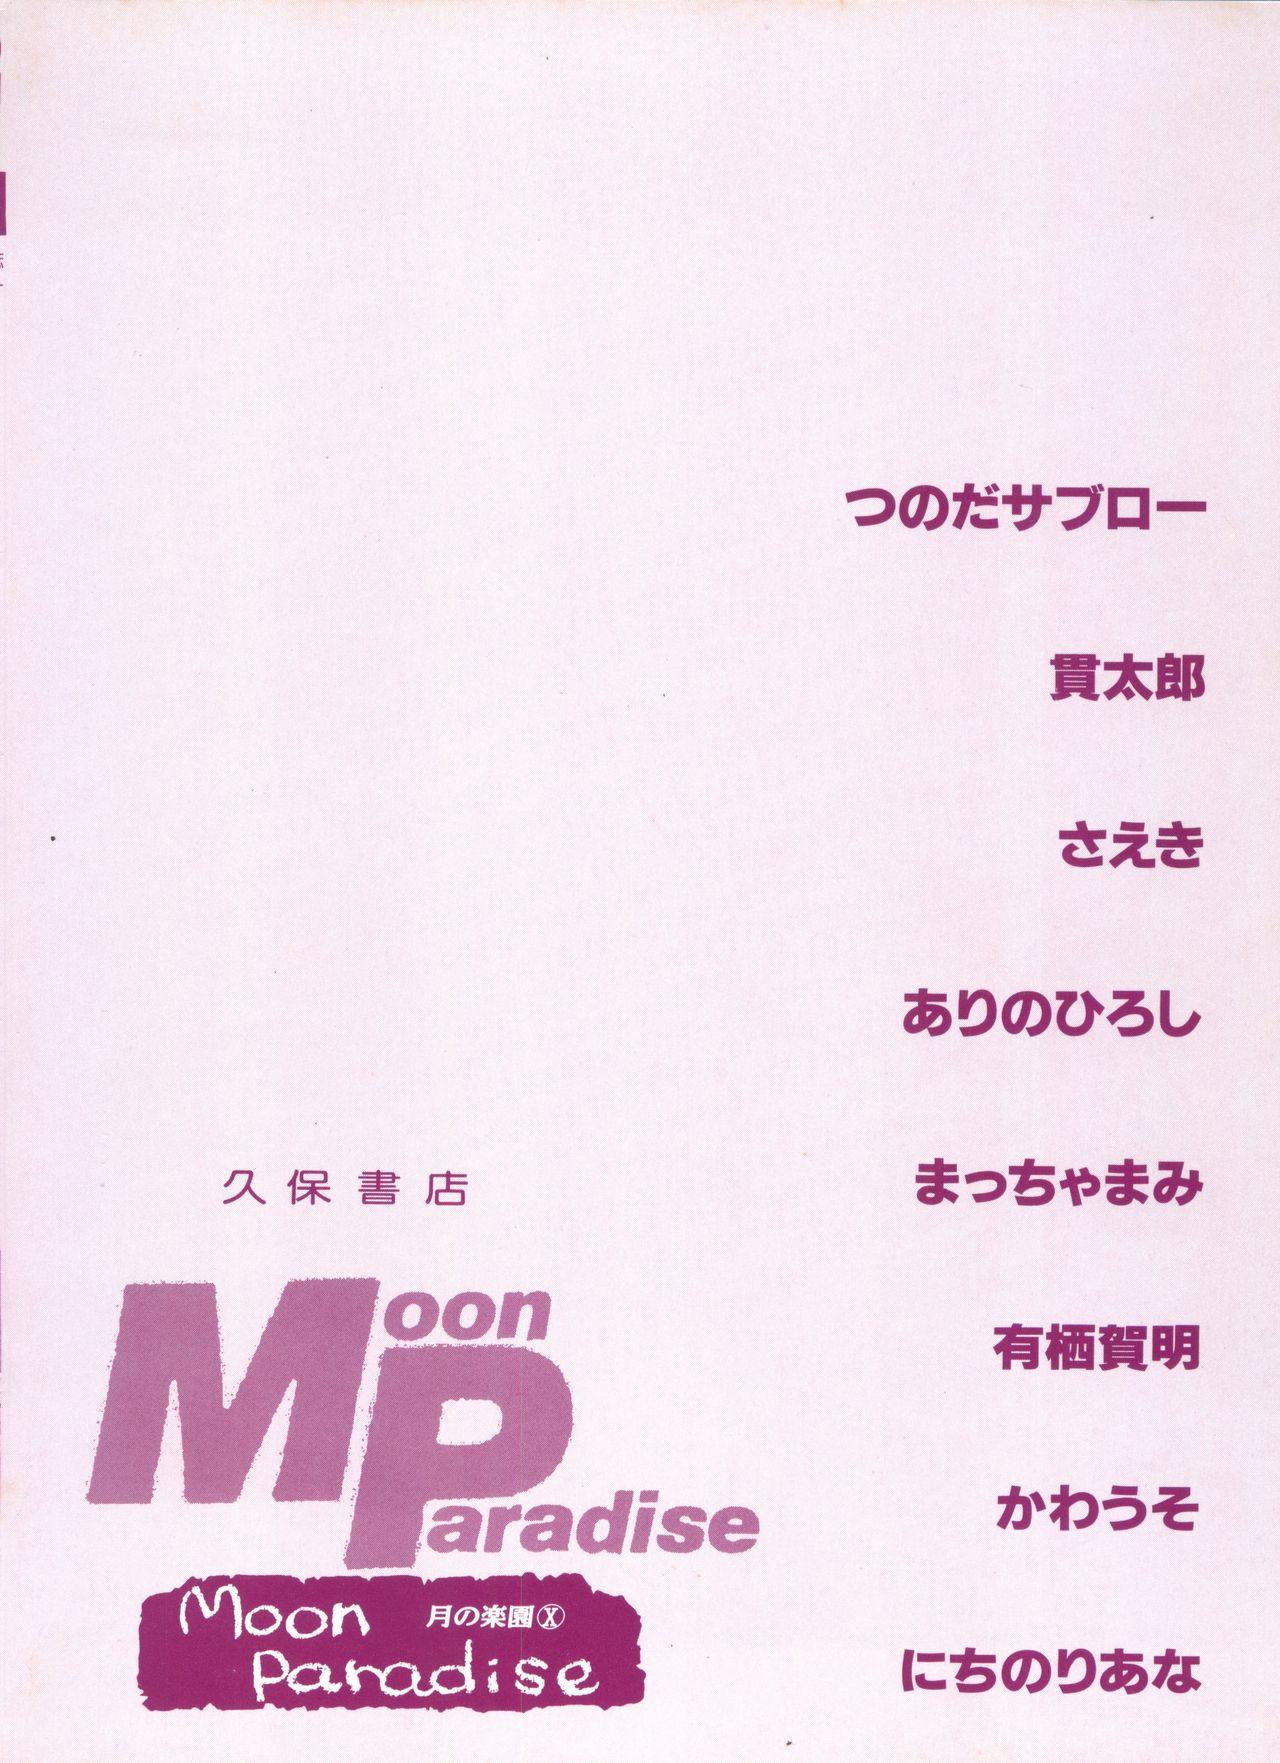 Bishoujo Doujinshi Anthology 16 - Moon Paradise 10 Tsuki no Rakuen 150